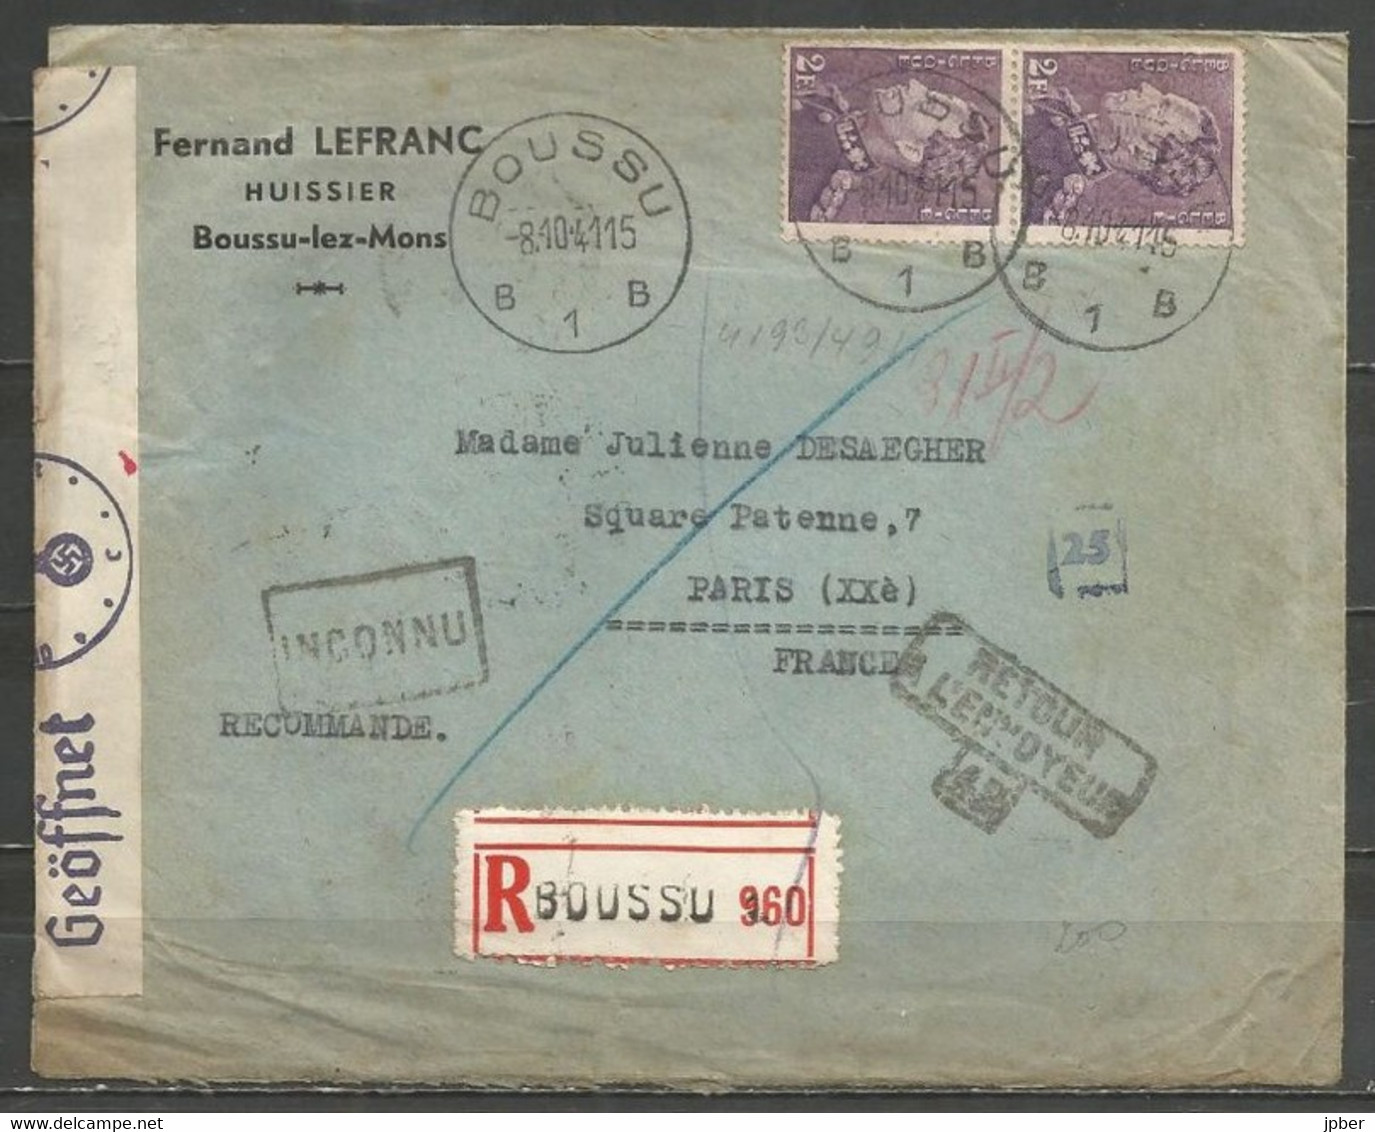 Belgique - Léopold III Poortman N°431 Recommandé Du 8-10-41 De BOUSSU Vers PARIS, Bandelette Censure, Multiples Cachets - 1936-1951 Poortman